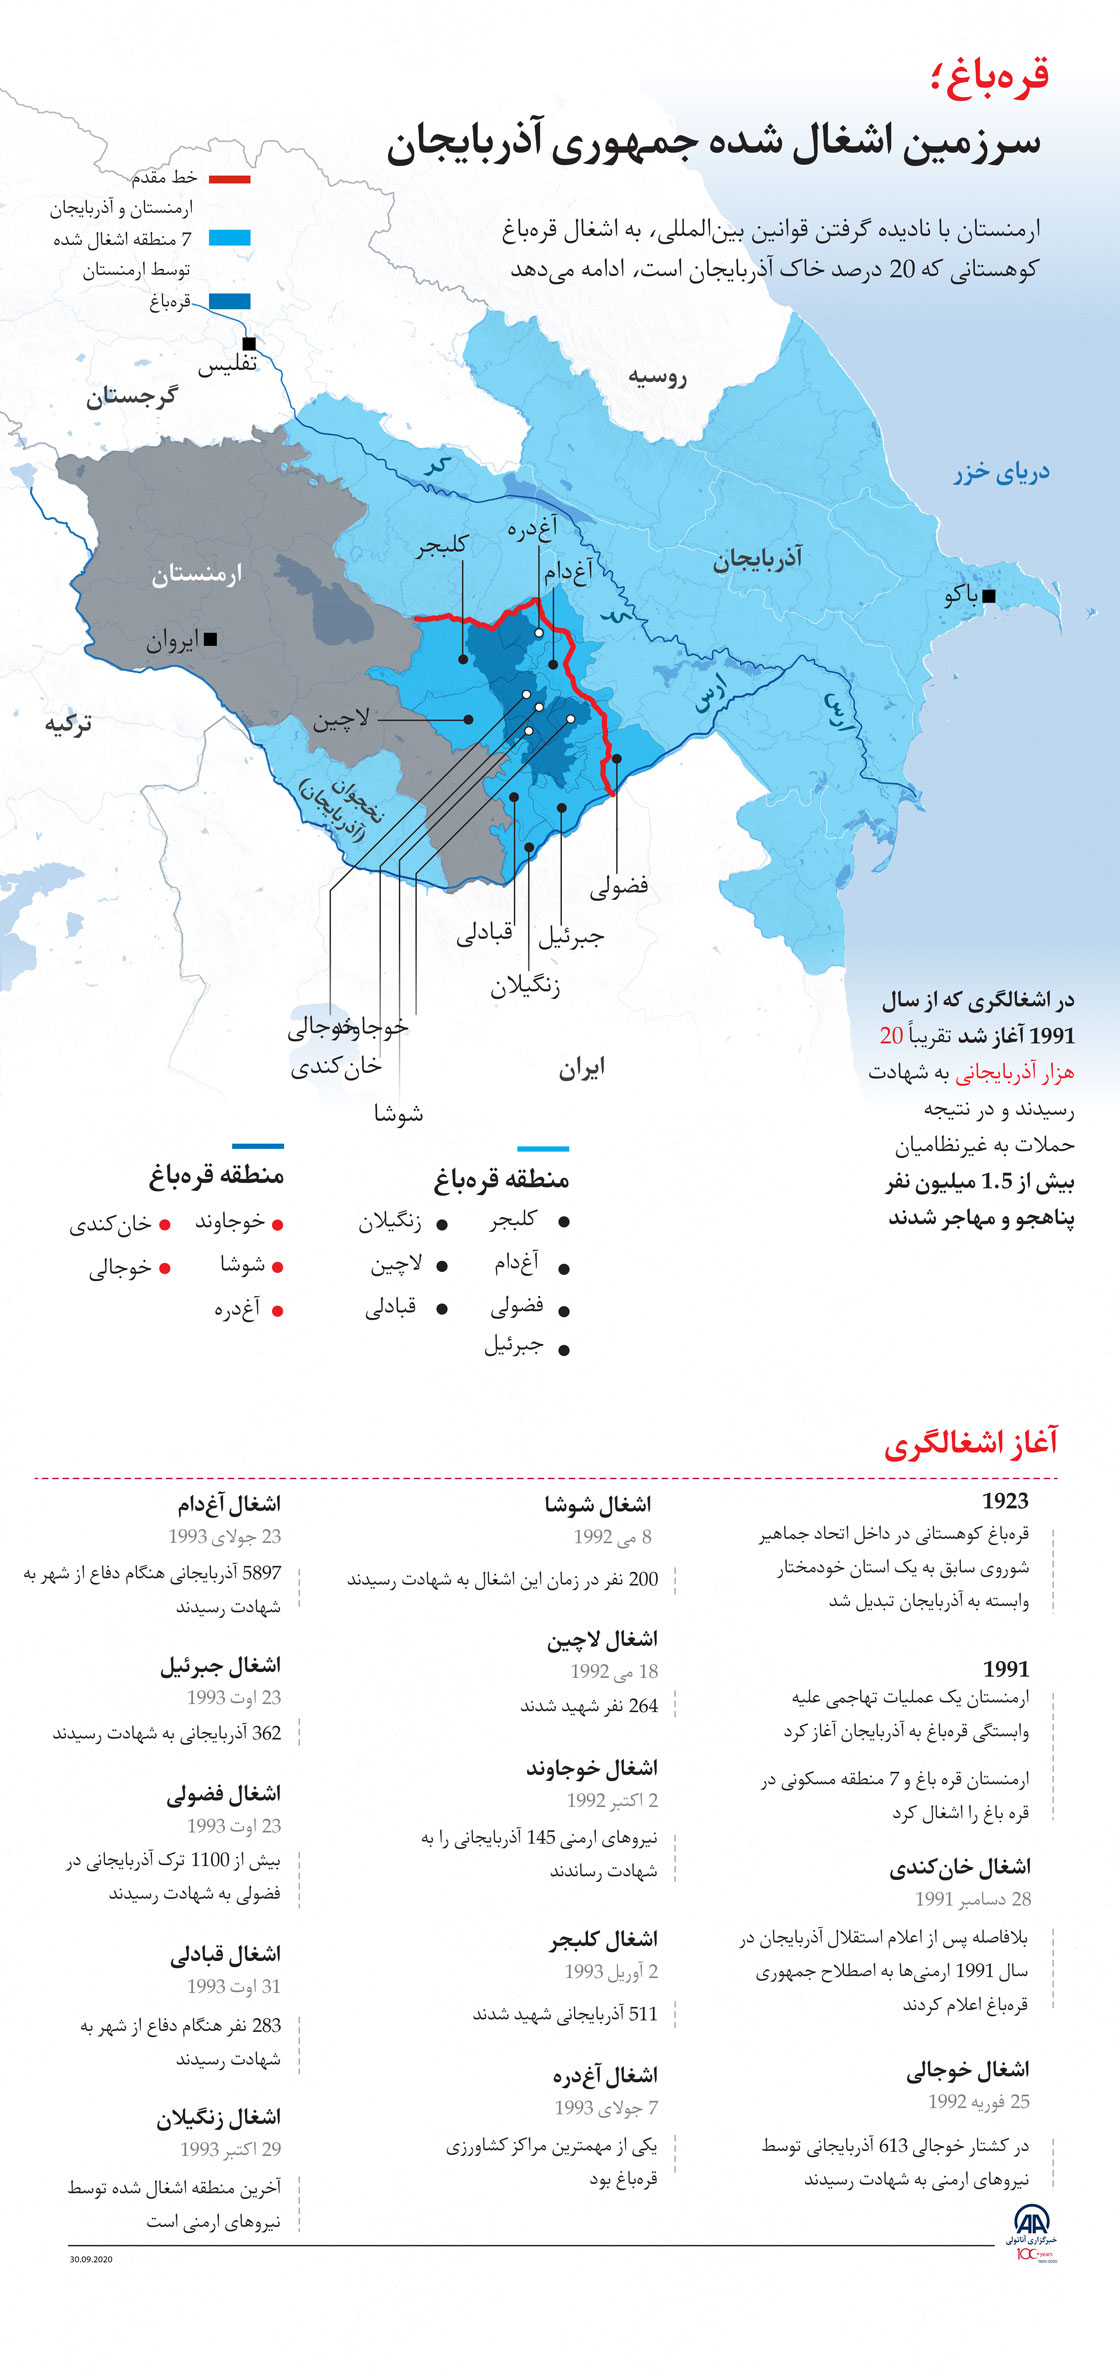 قره‌باغ؛ سرزمین اشغال شده جمهوری آذربایجان